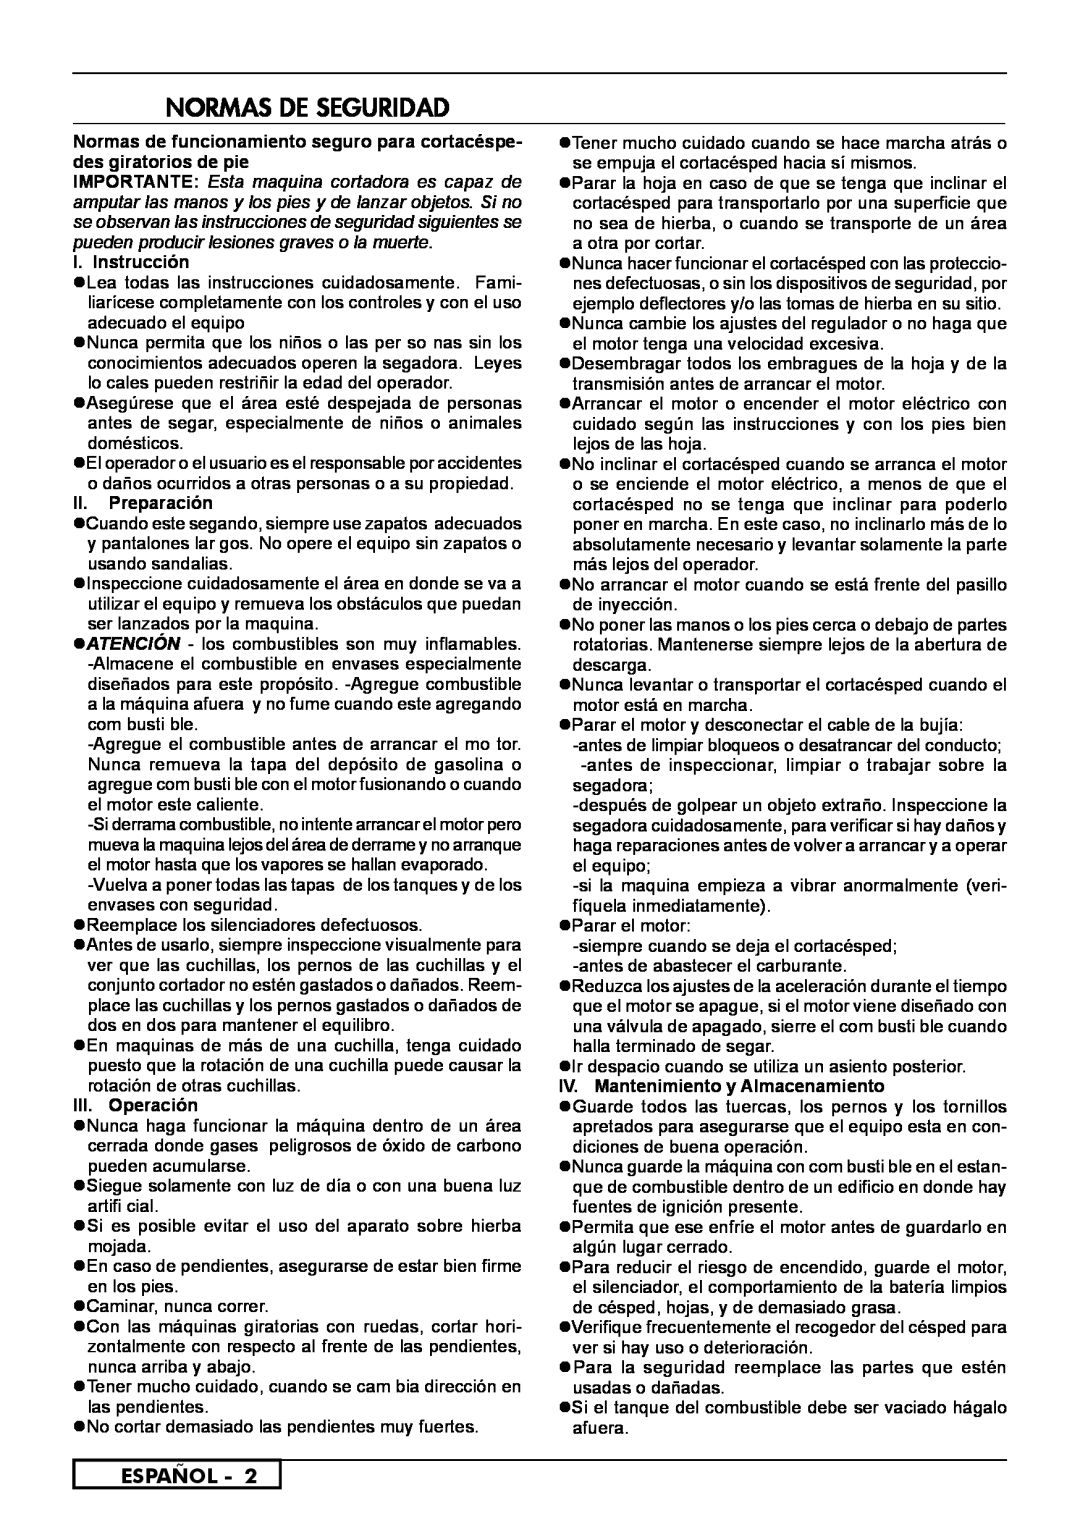 McCulloch 966489001, 966531901, 966531801 Normas De Seguridad, Español, I. Instrucción, II.Preparación, III. Operación 